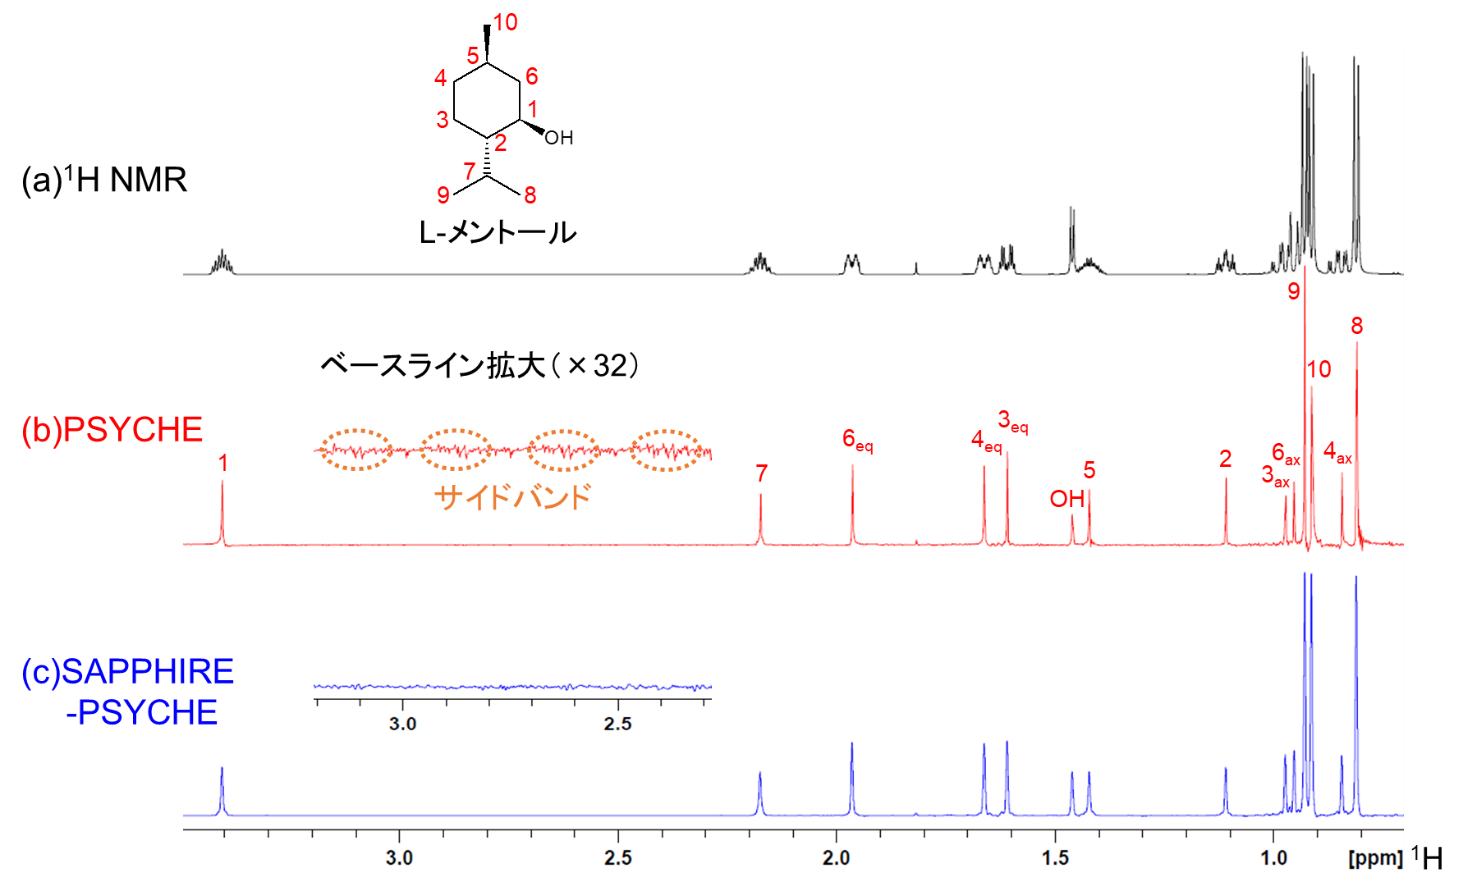 【図3】試料の(a)1H NMR、(b) PSYCHEおよび(c) SAPPHIRE-PSYCHEの比較スペクトル
